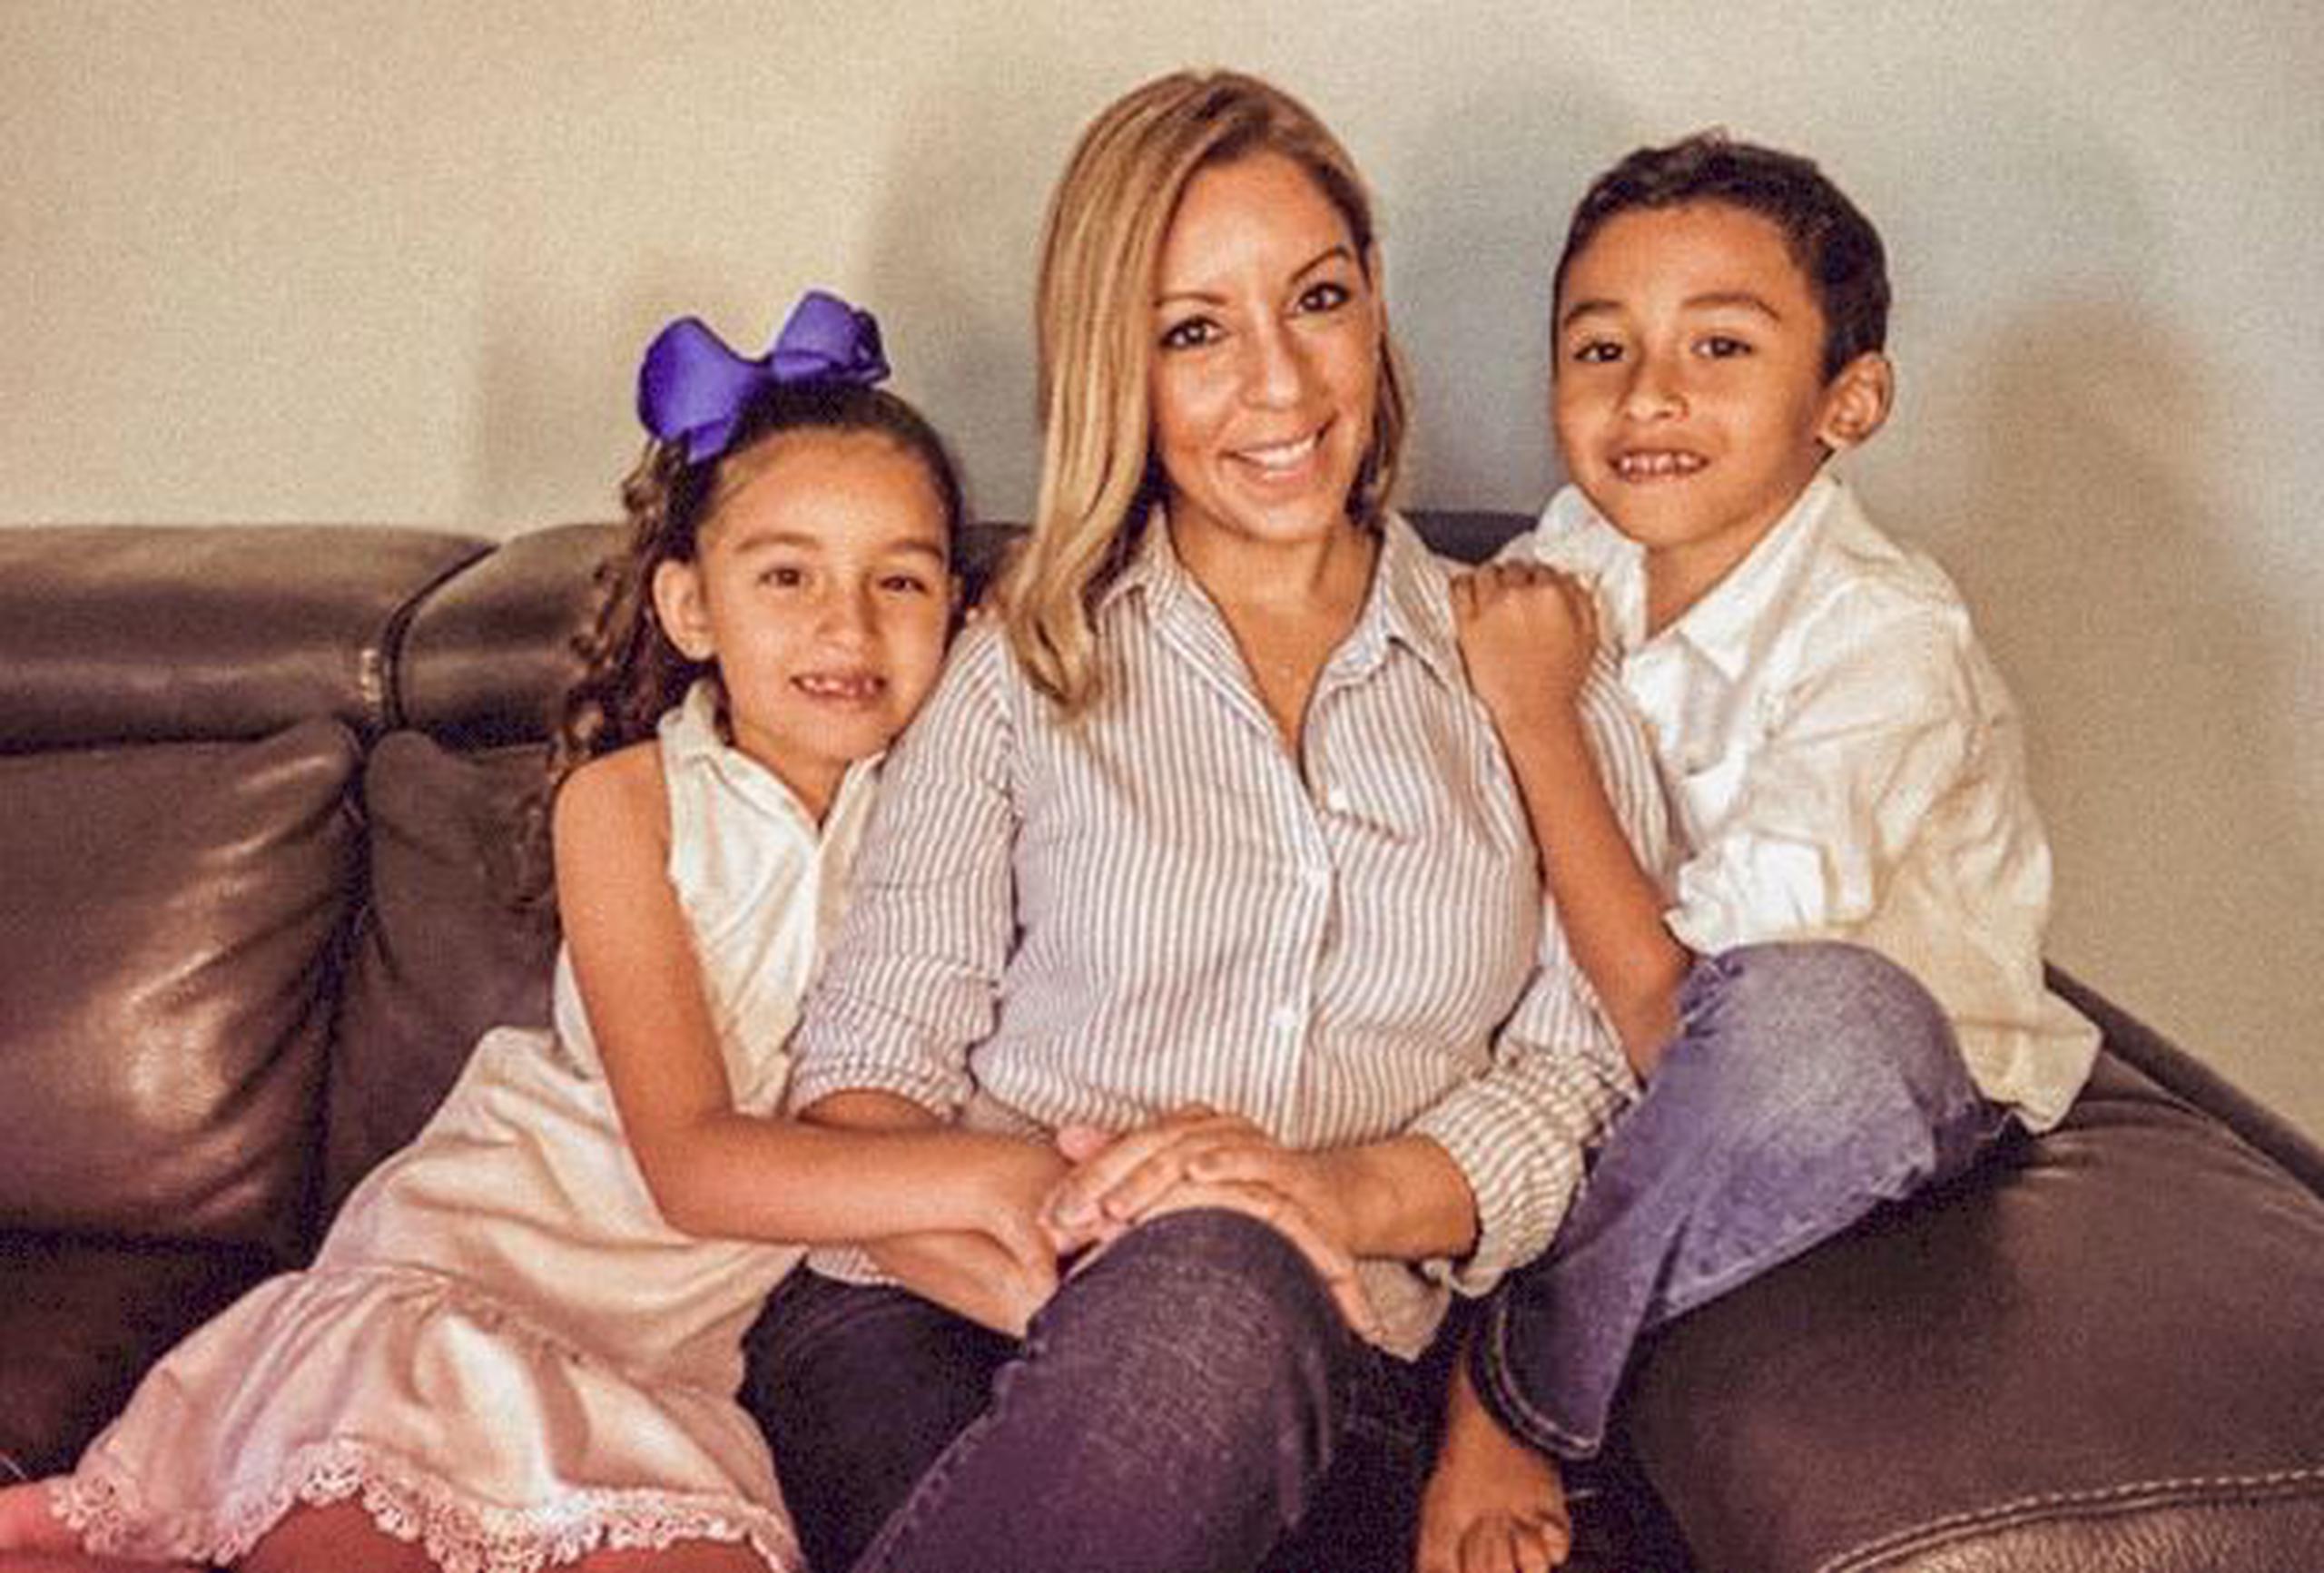 La doctora Mugette Isona, junto con sus hijos, participa de la iniciativa Comparte tu esencia de L’Oréal en Puerto Rico.